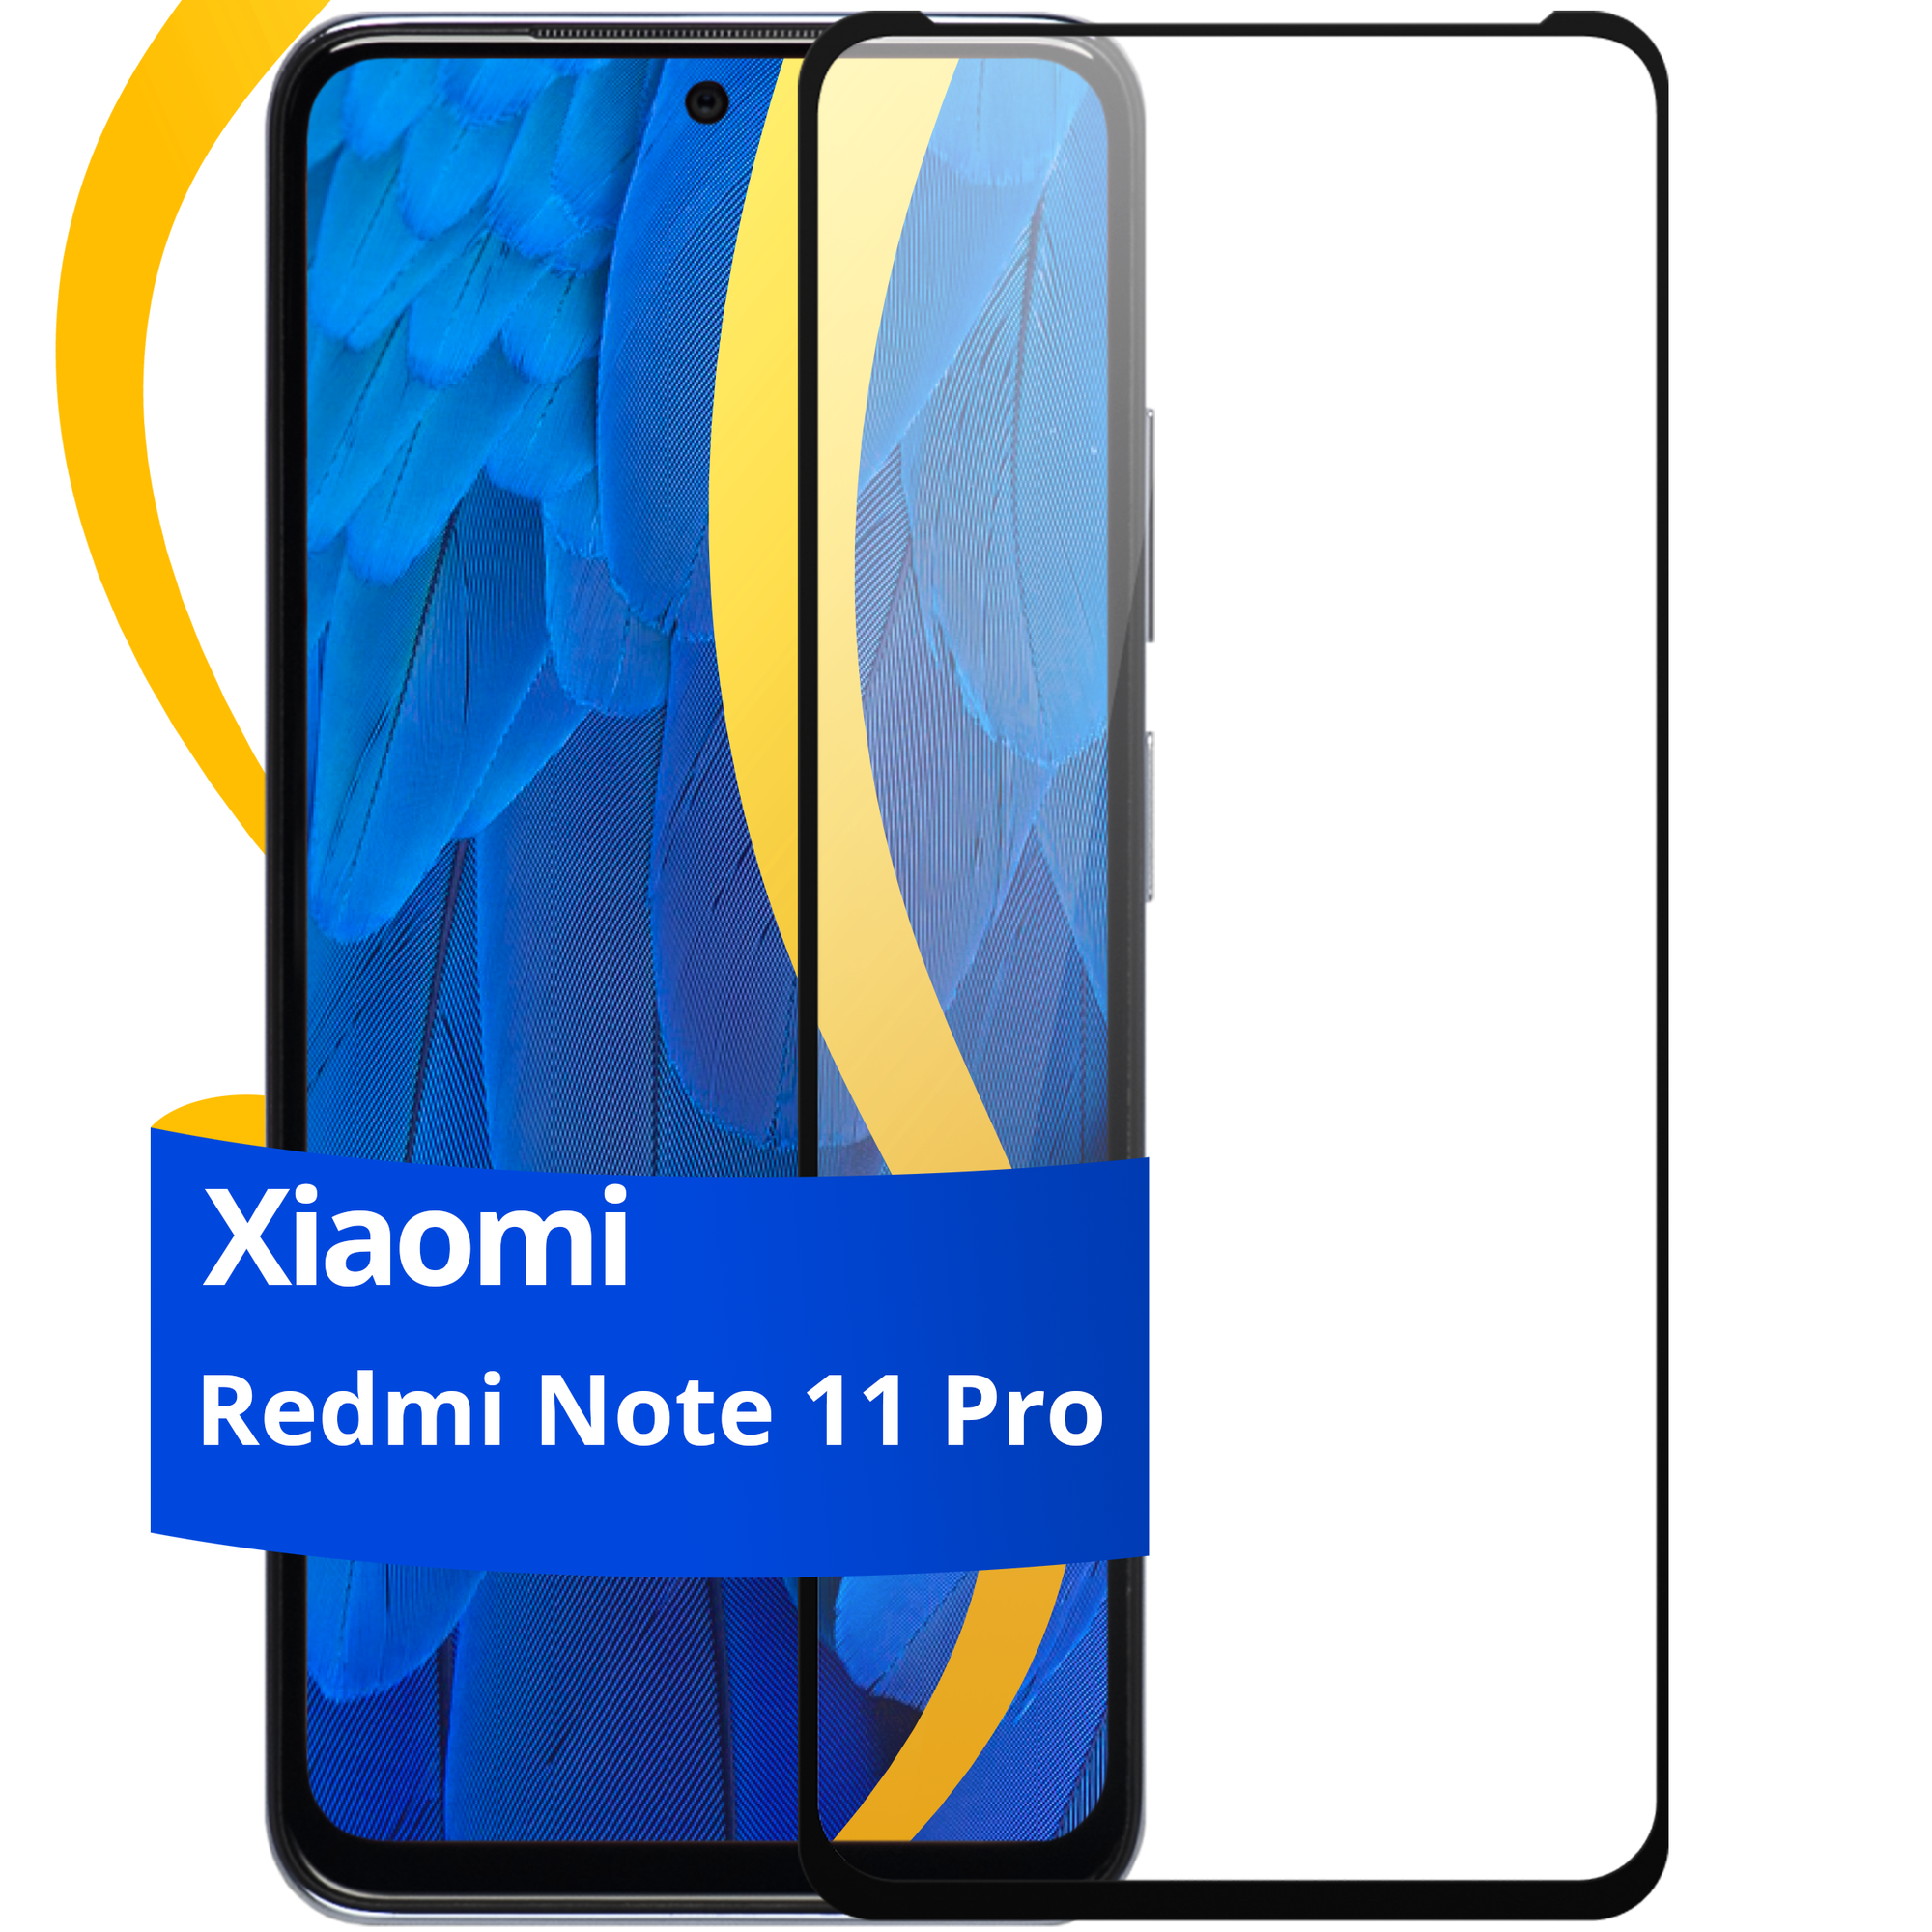 Глянцевое защитное стекло для телефона Xiaomi Redmi Note 11 Pro / Противоударное стекло с олеофобным покрытием на смартфон Сяоми Редми Нот 11 Про